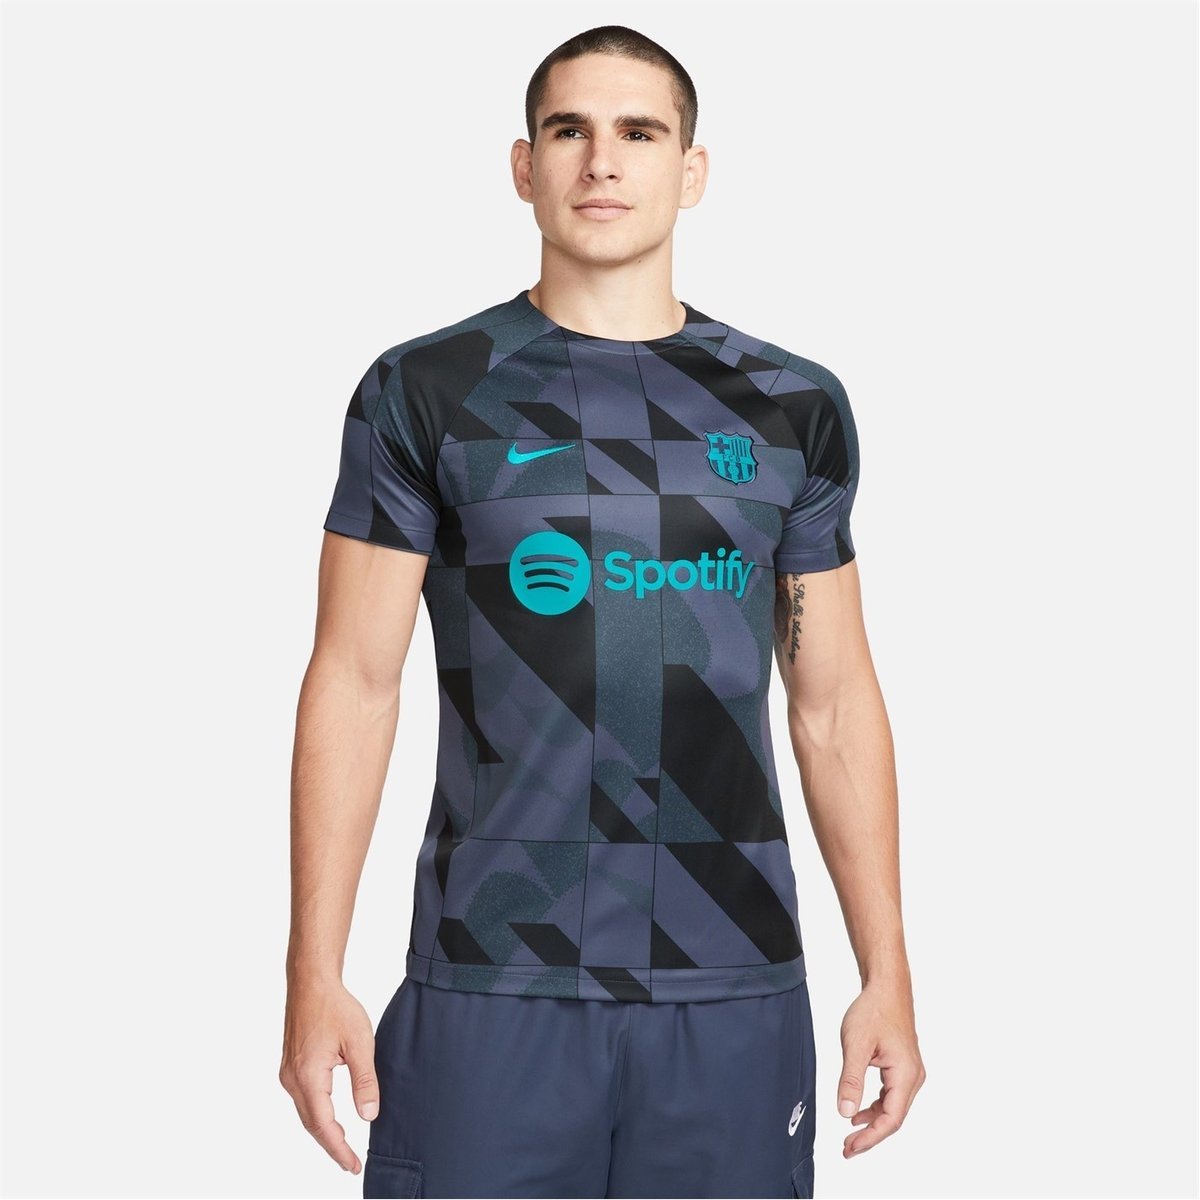 Barcelona Kit & Shirts - Lovell Soccer